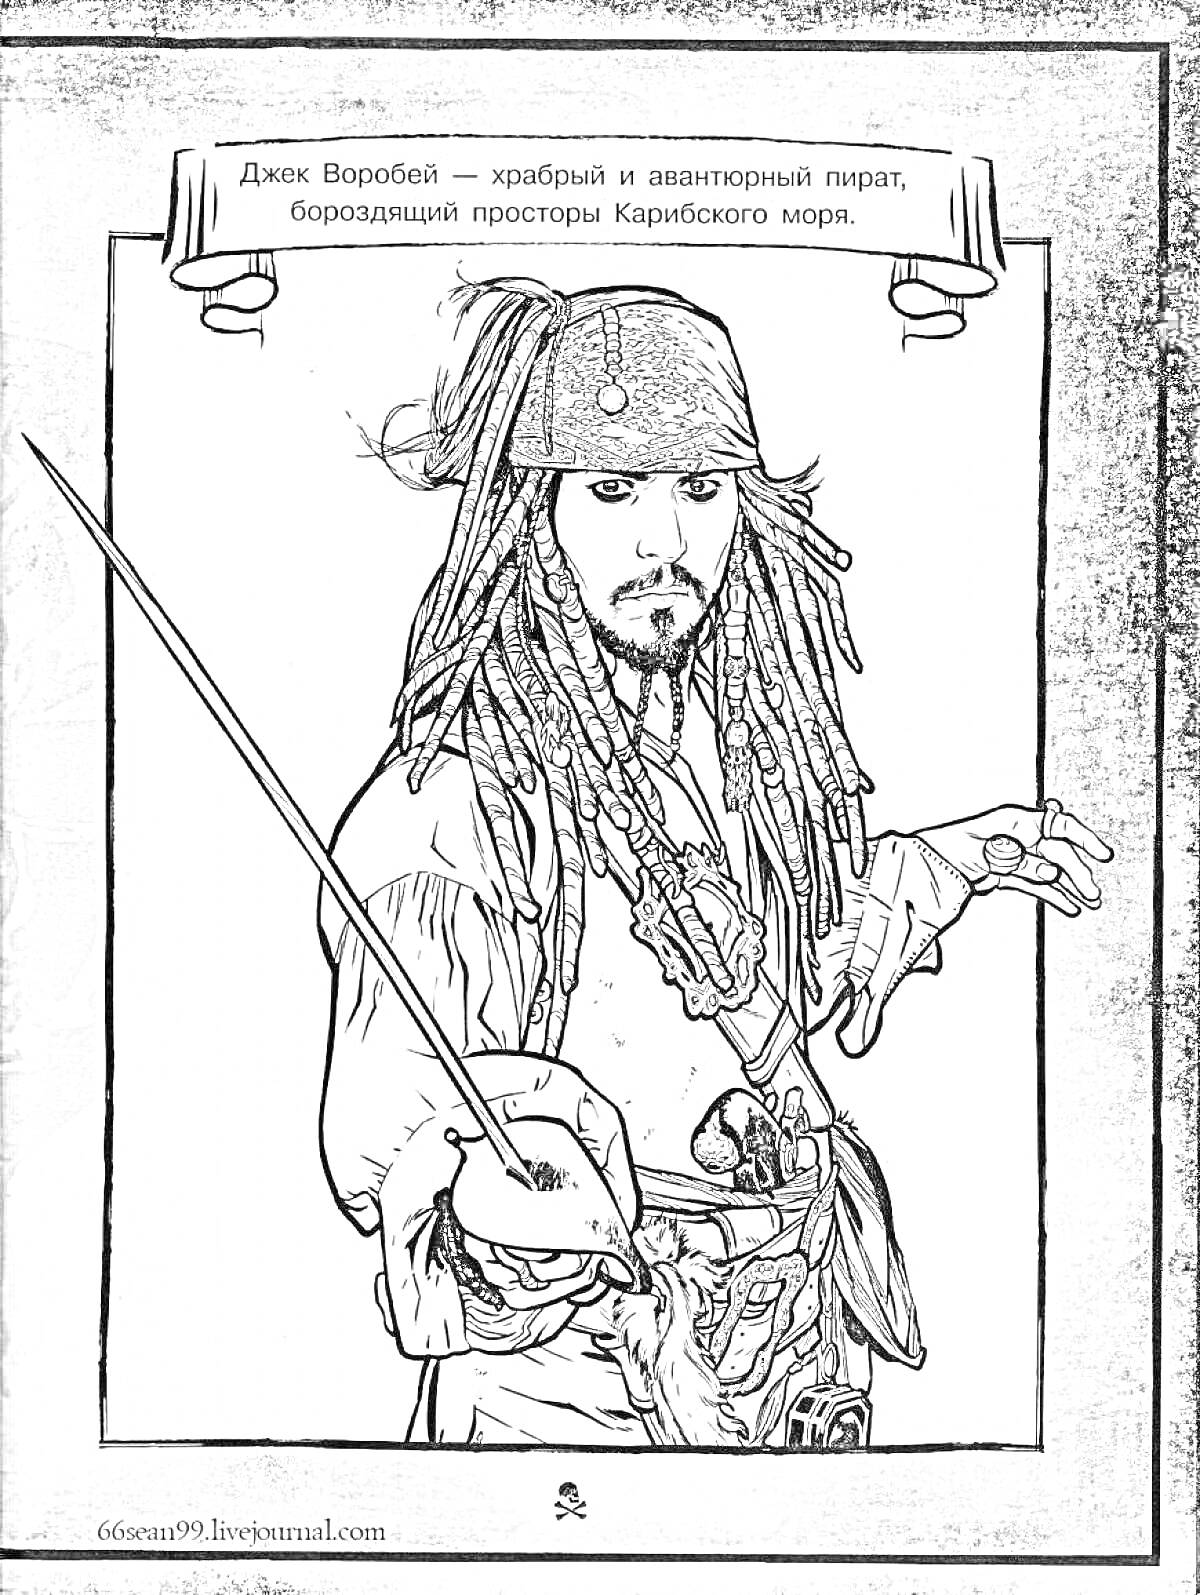 Раскраска Джек Воробей с мечом, пират с дредами, текст о храбром и авантюрном пирате